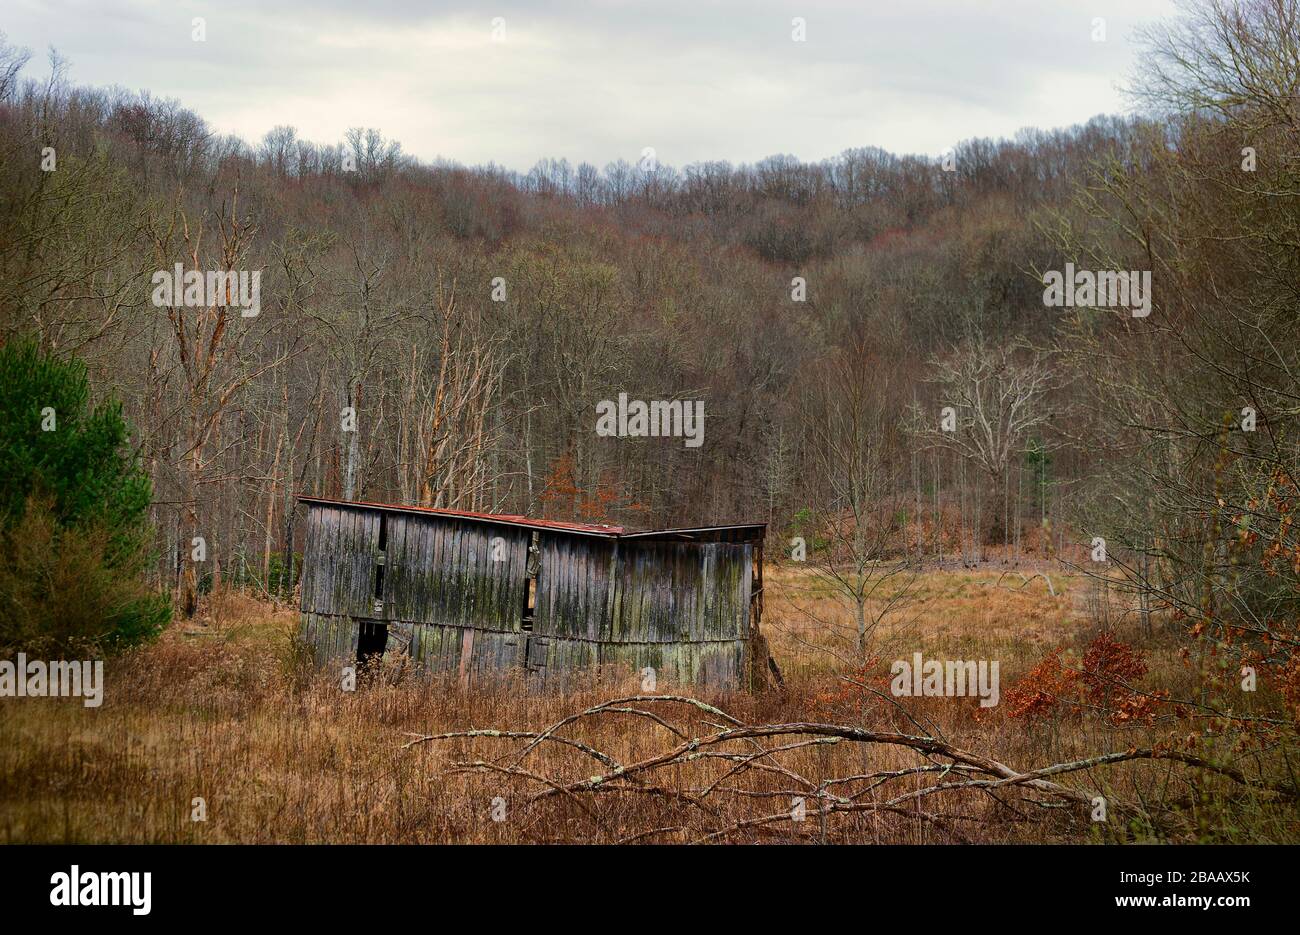 La structure abandonnée a laissé à la nature dans un cadre rural de campagne en Virginie, aux États-Unis Banque D'Images